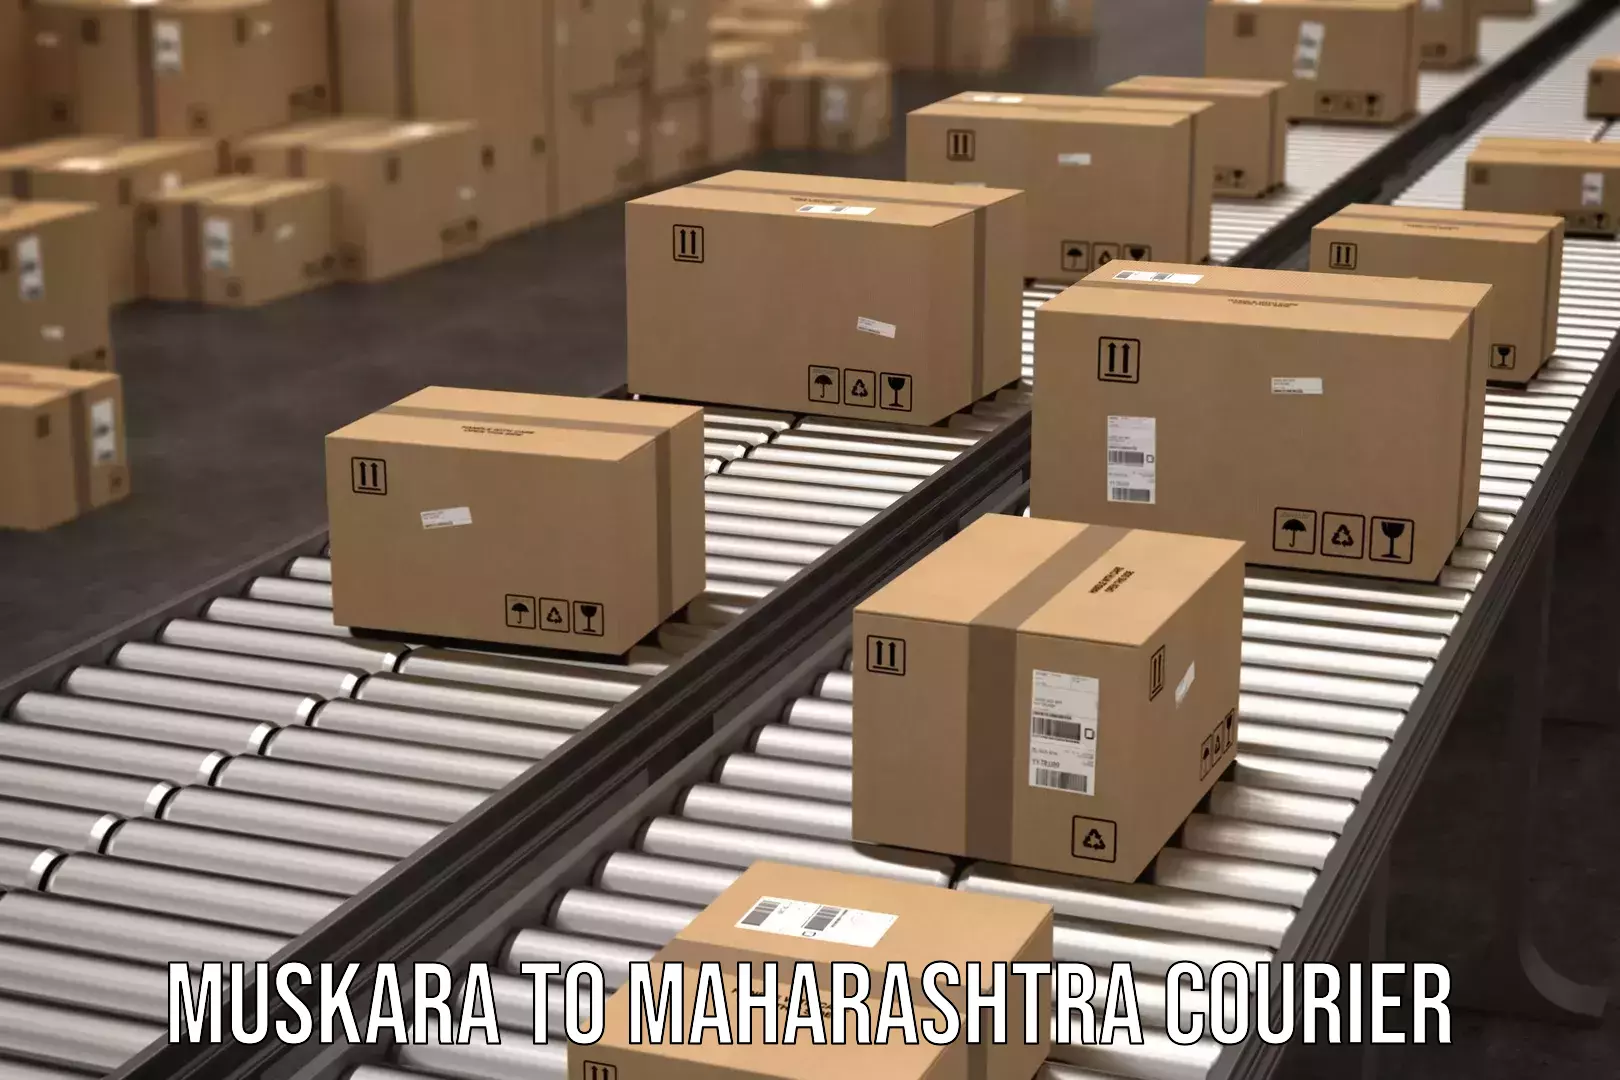 Door-to-door freight service Muskara to Maharashtra